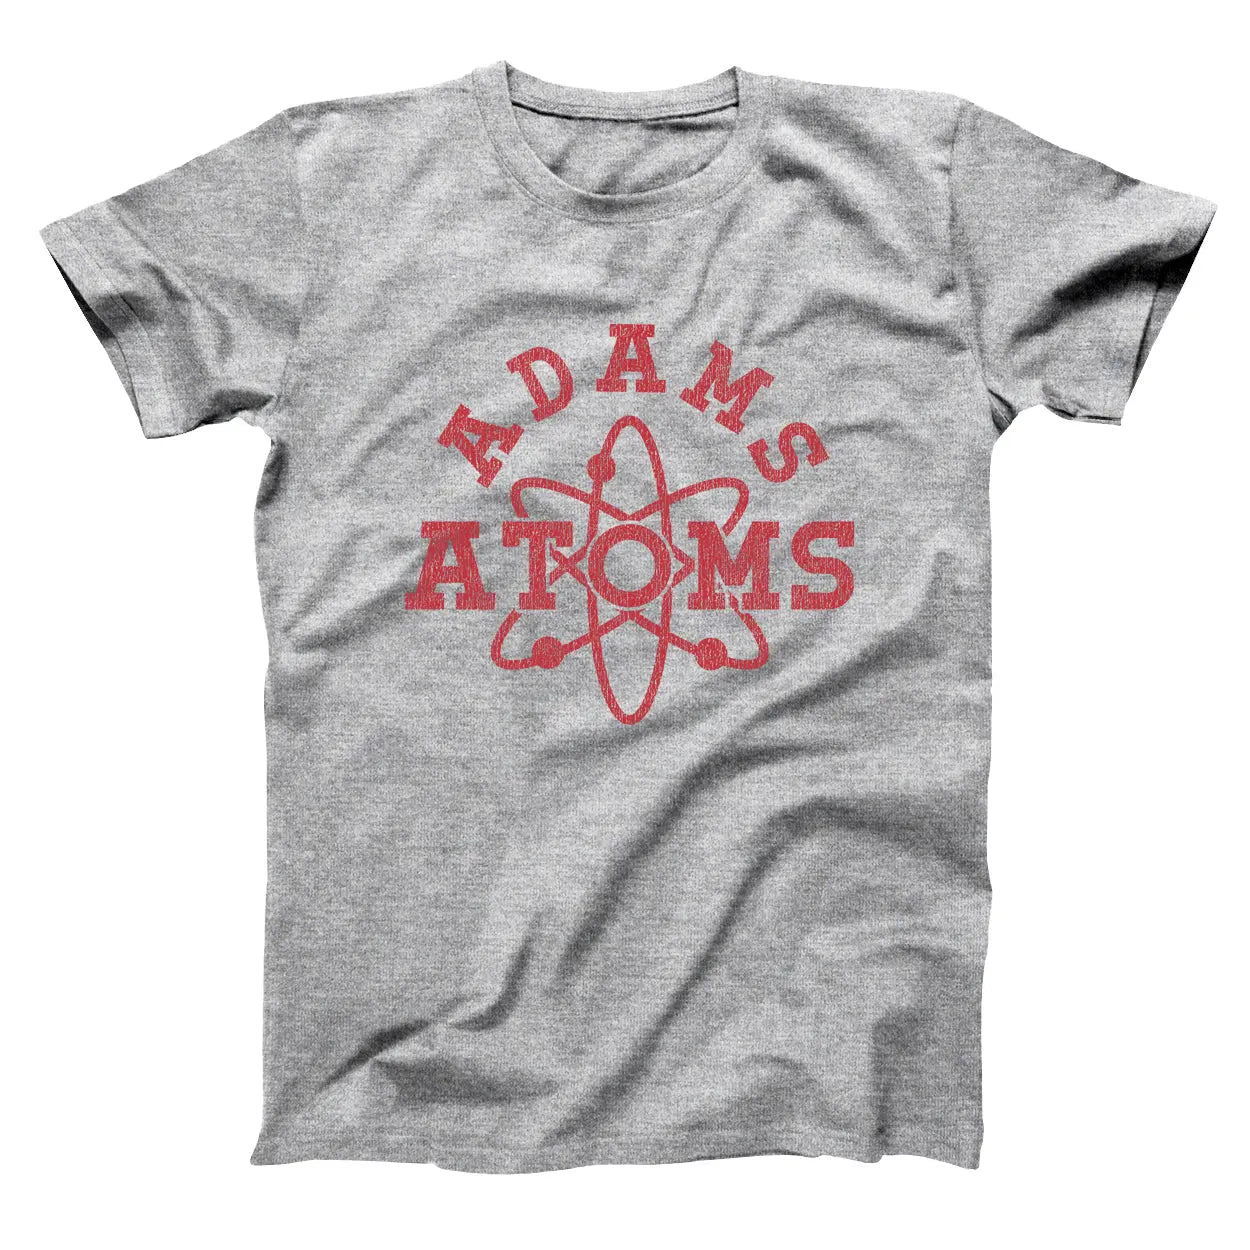 Atoms Adams Tshirt - Donkey Tees